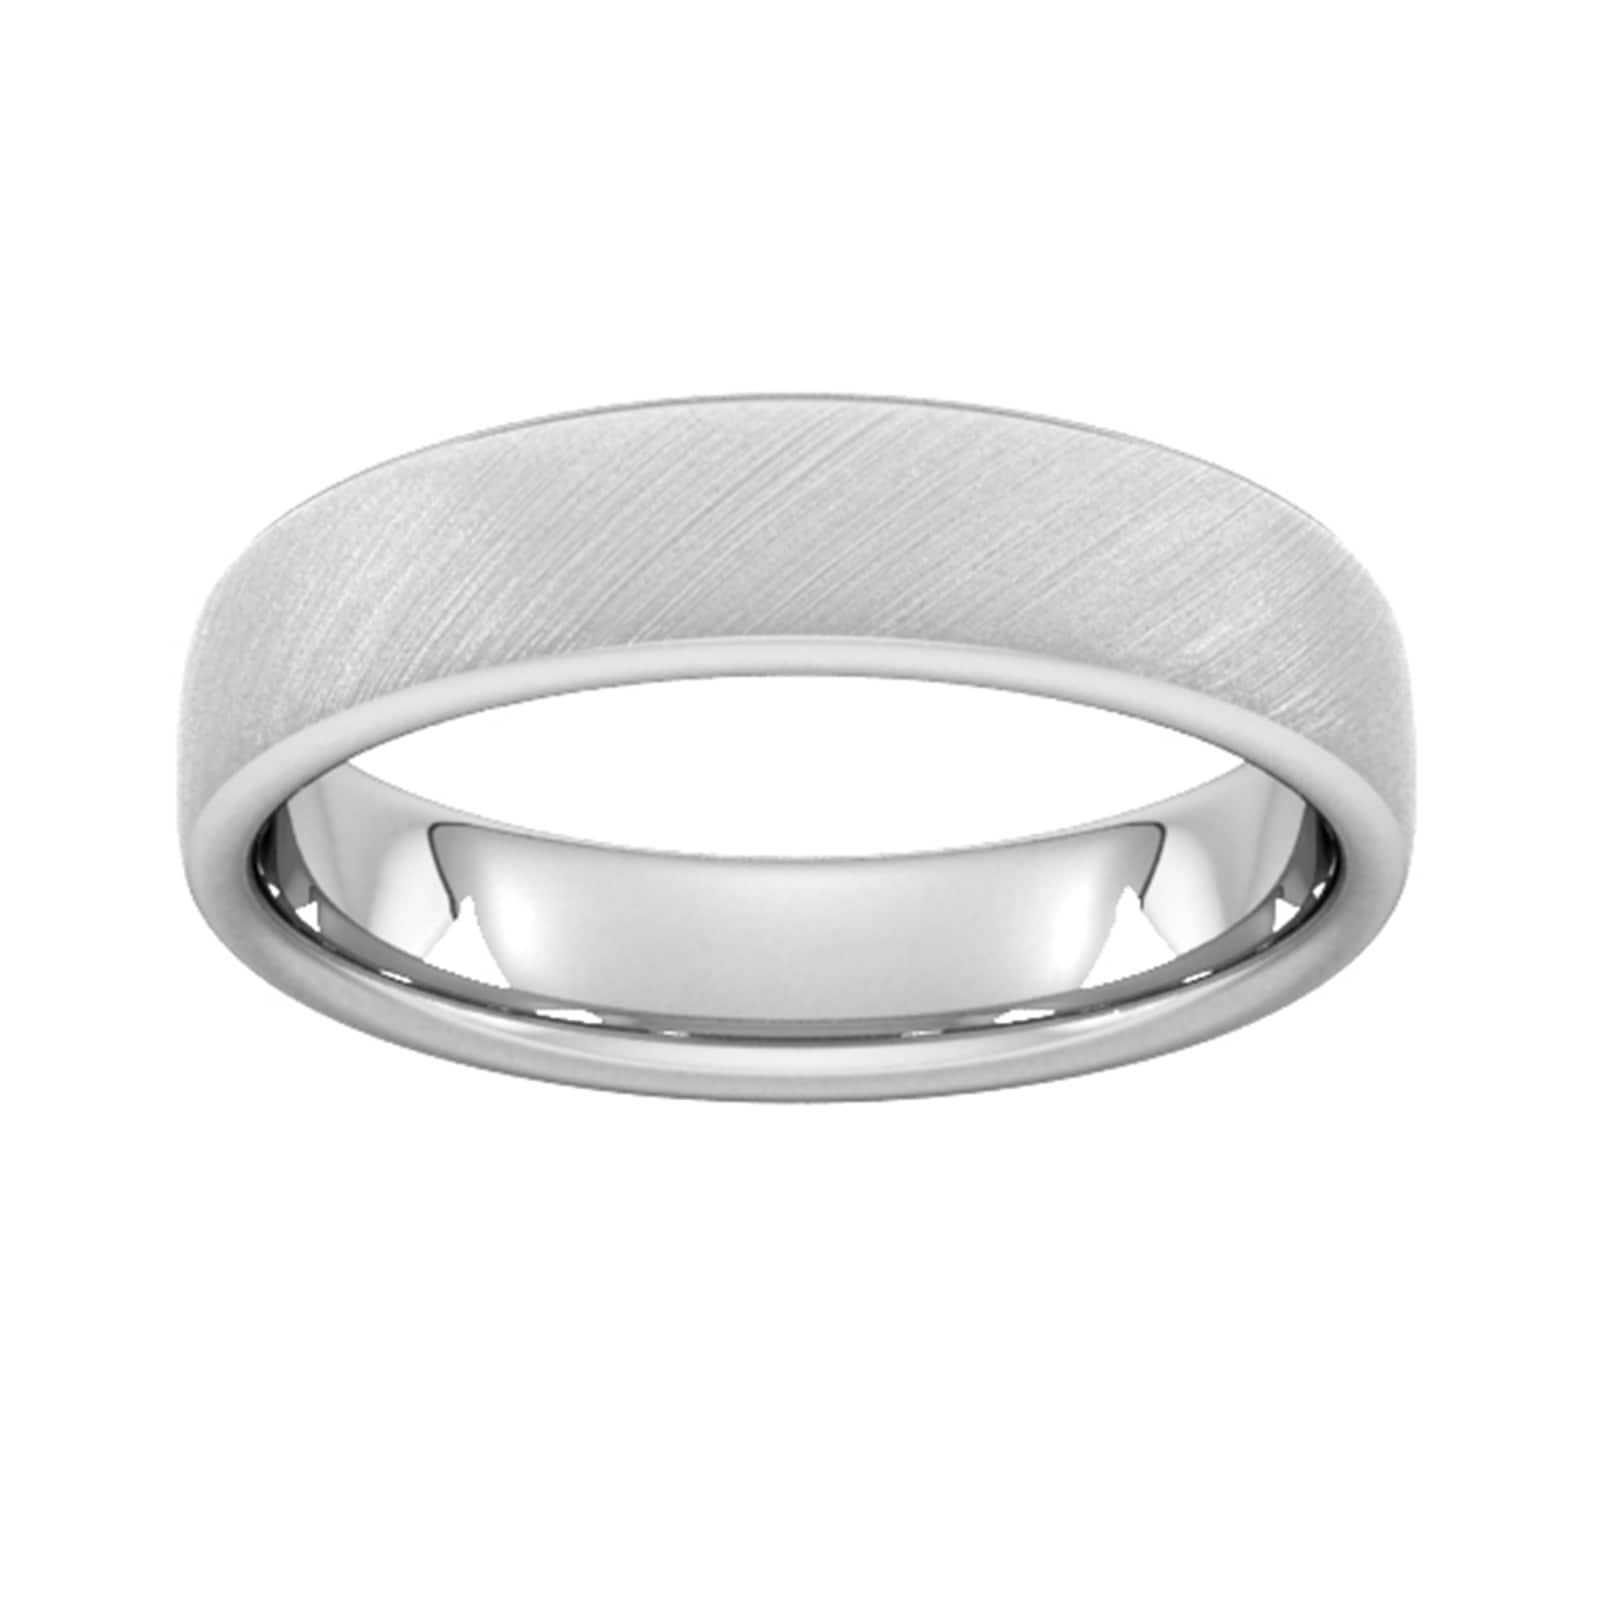 5mm Flat Court Heavy Diagonal Matt Finish Wedding Ring In 950 Palladium - Ring Size P